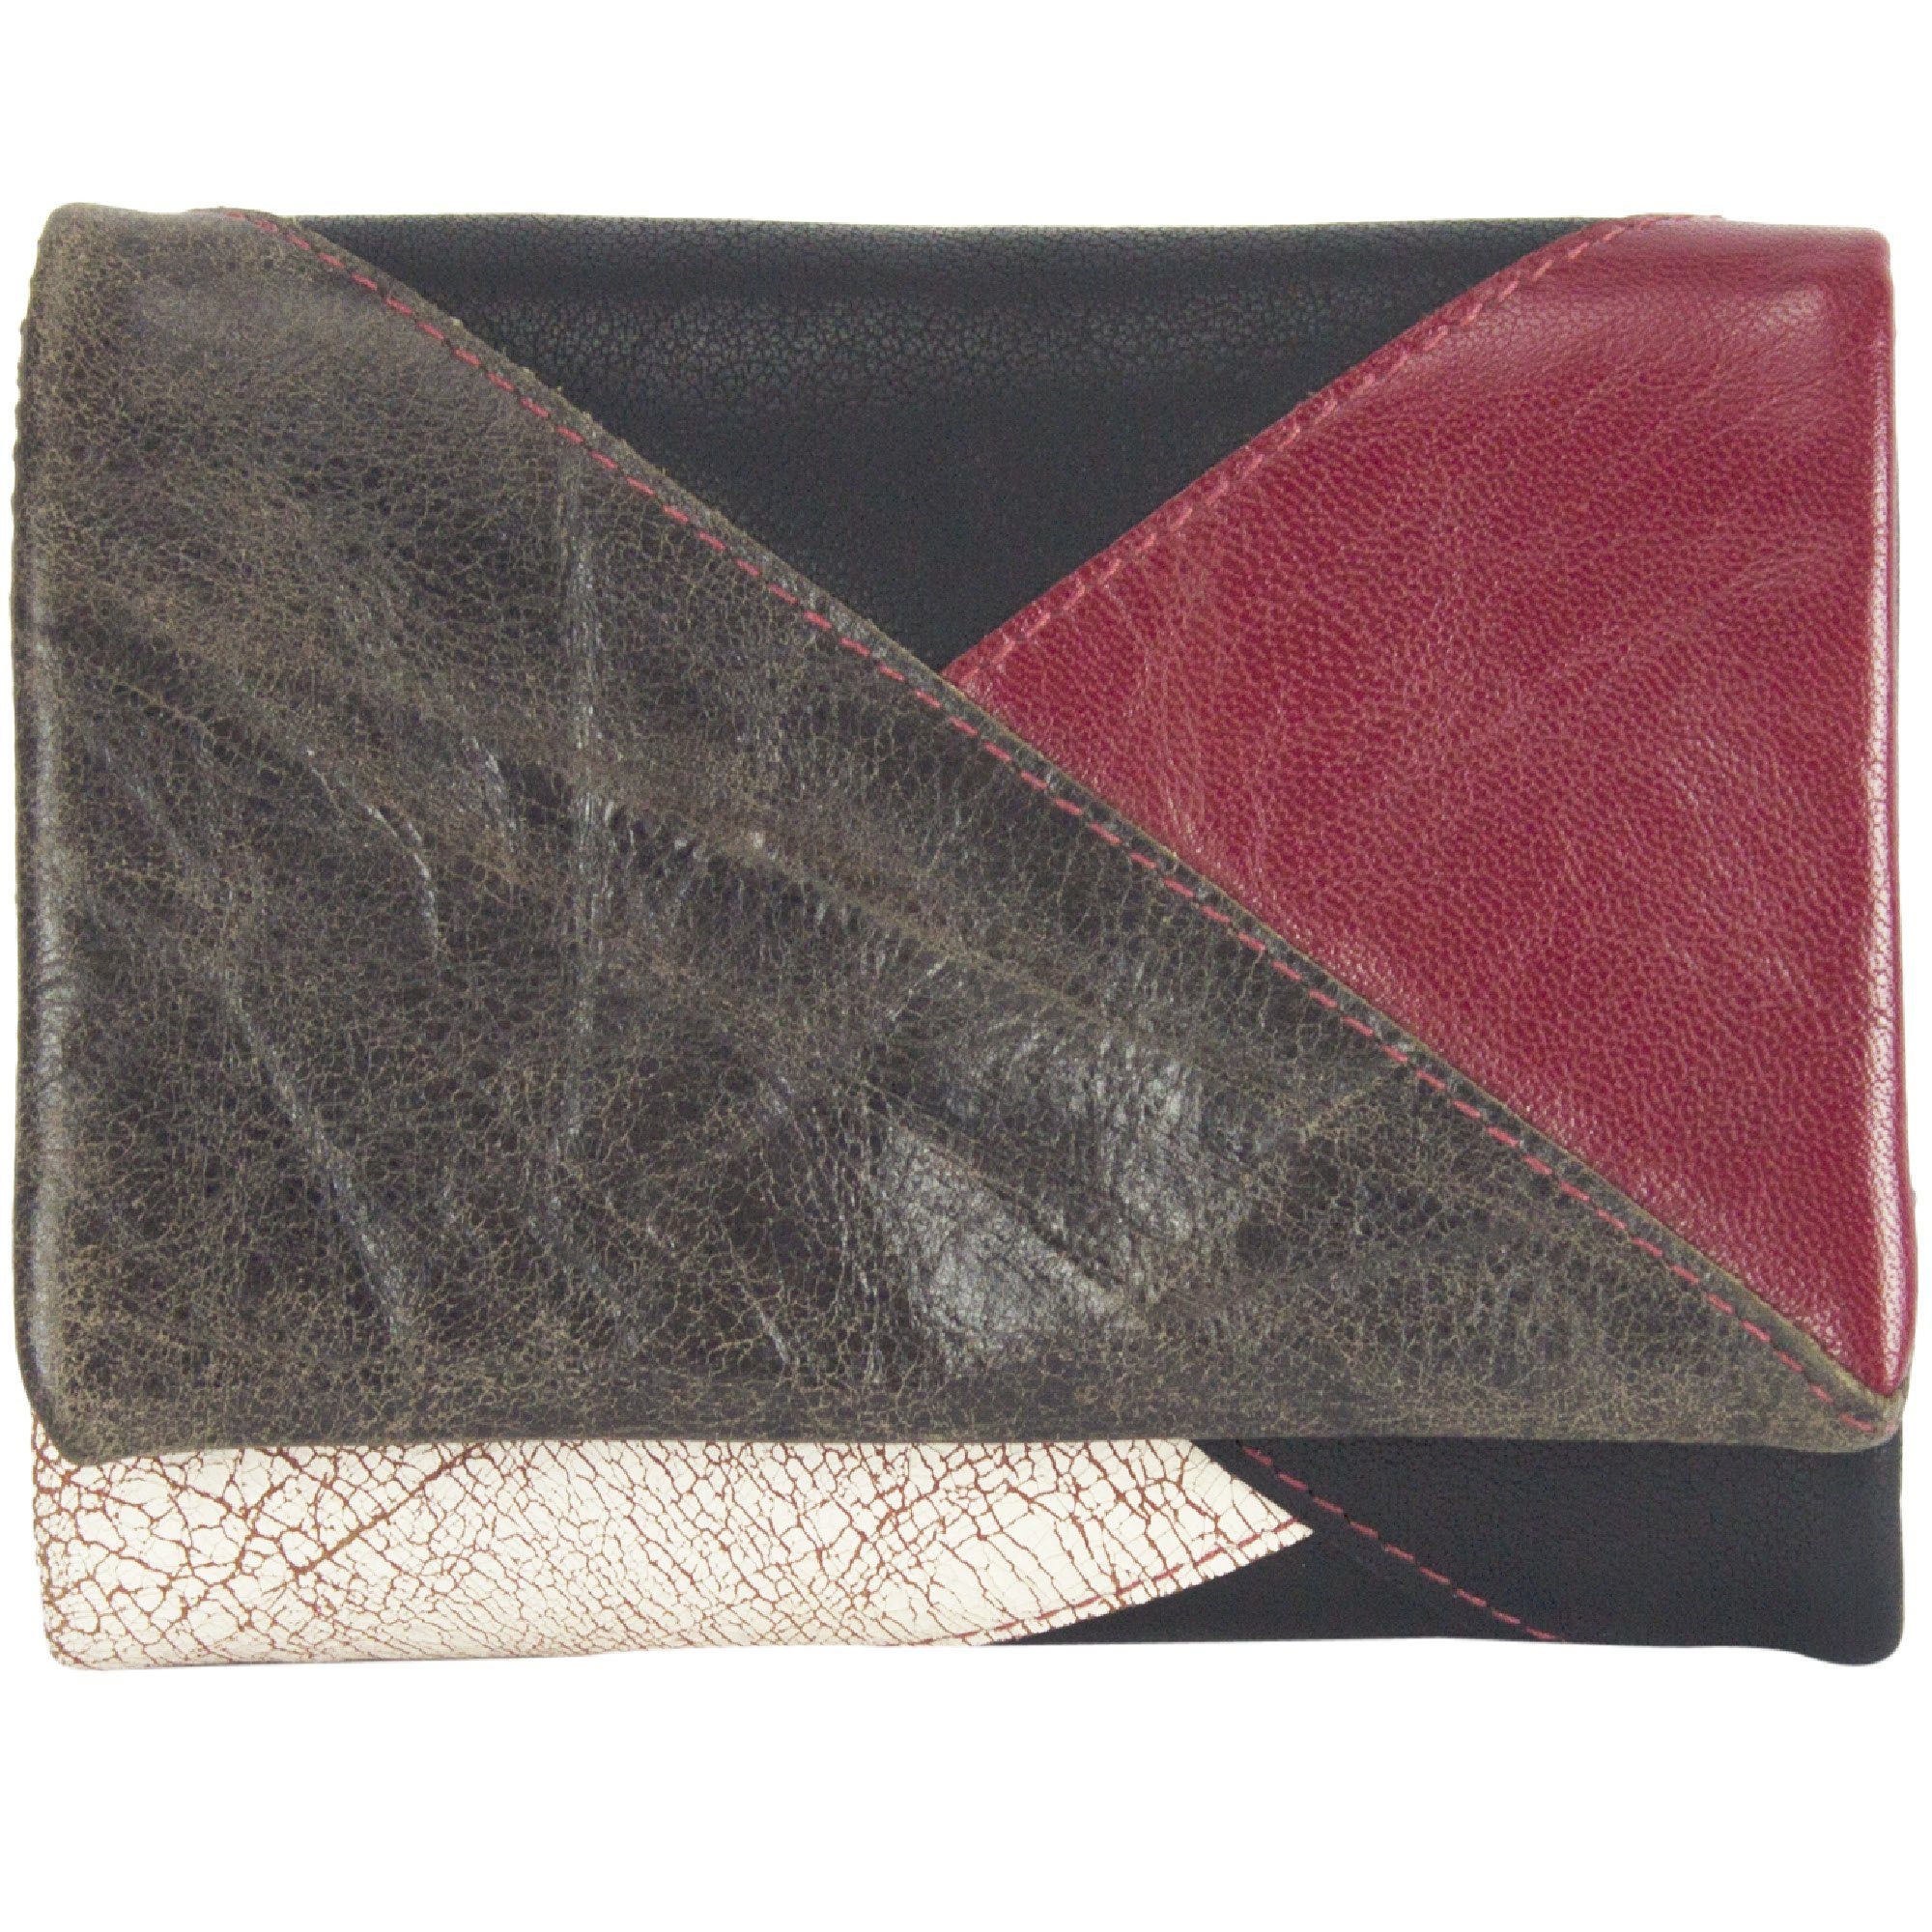 Sunsa Geldbörse Leder Geldbeutel Portemonnaie Brieftasche, echt Leder, mit RFID-Schutz, in eleganten Design, zeitlos rot